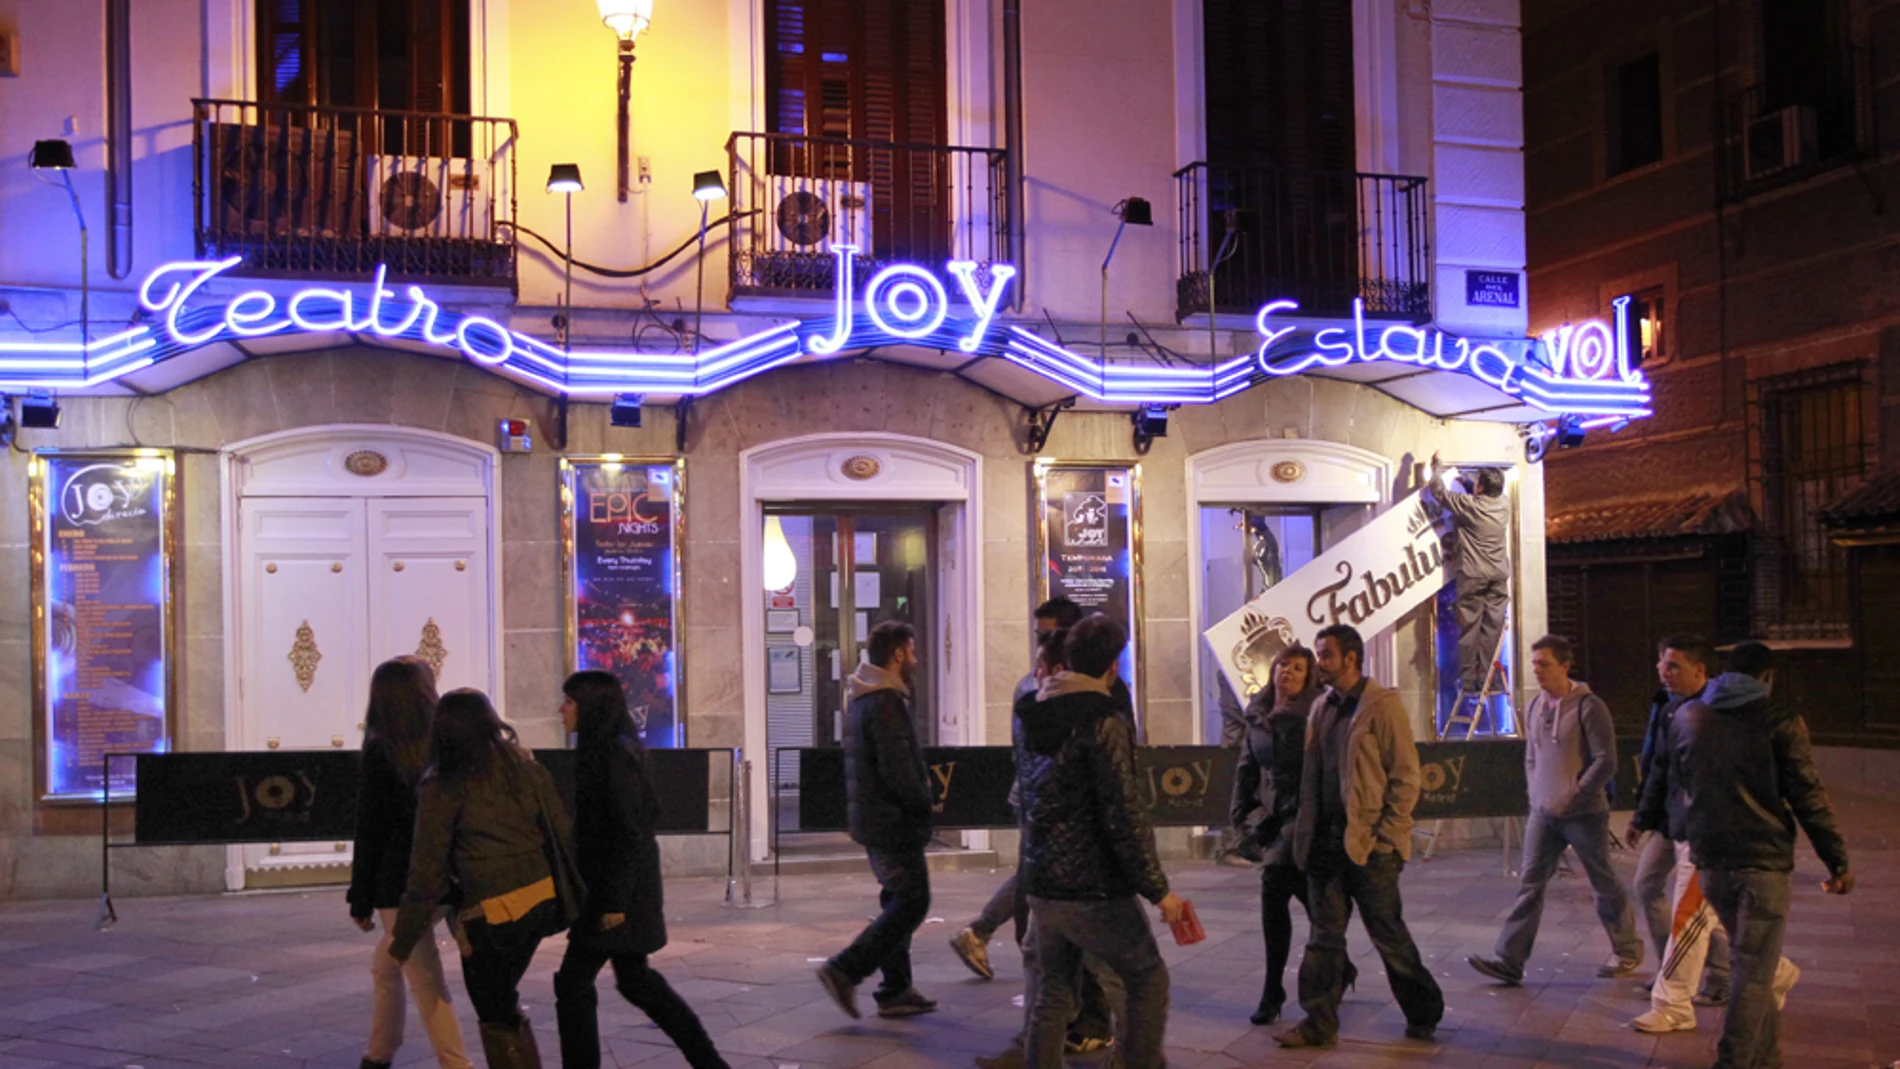 Fachada de la discoteca Joy - Teatro Eslava en la céntrica calle madrileña de Arenal